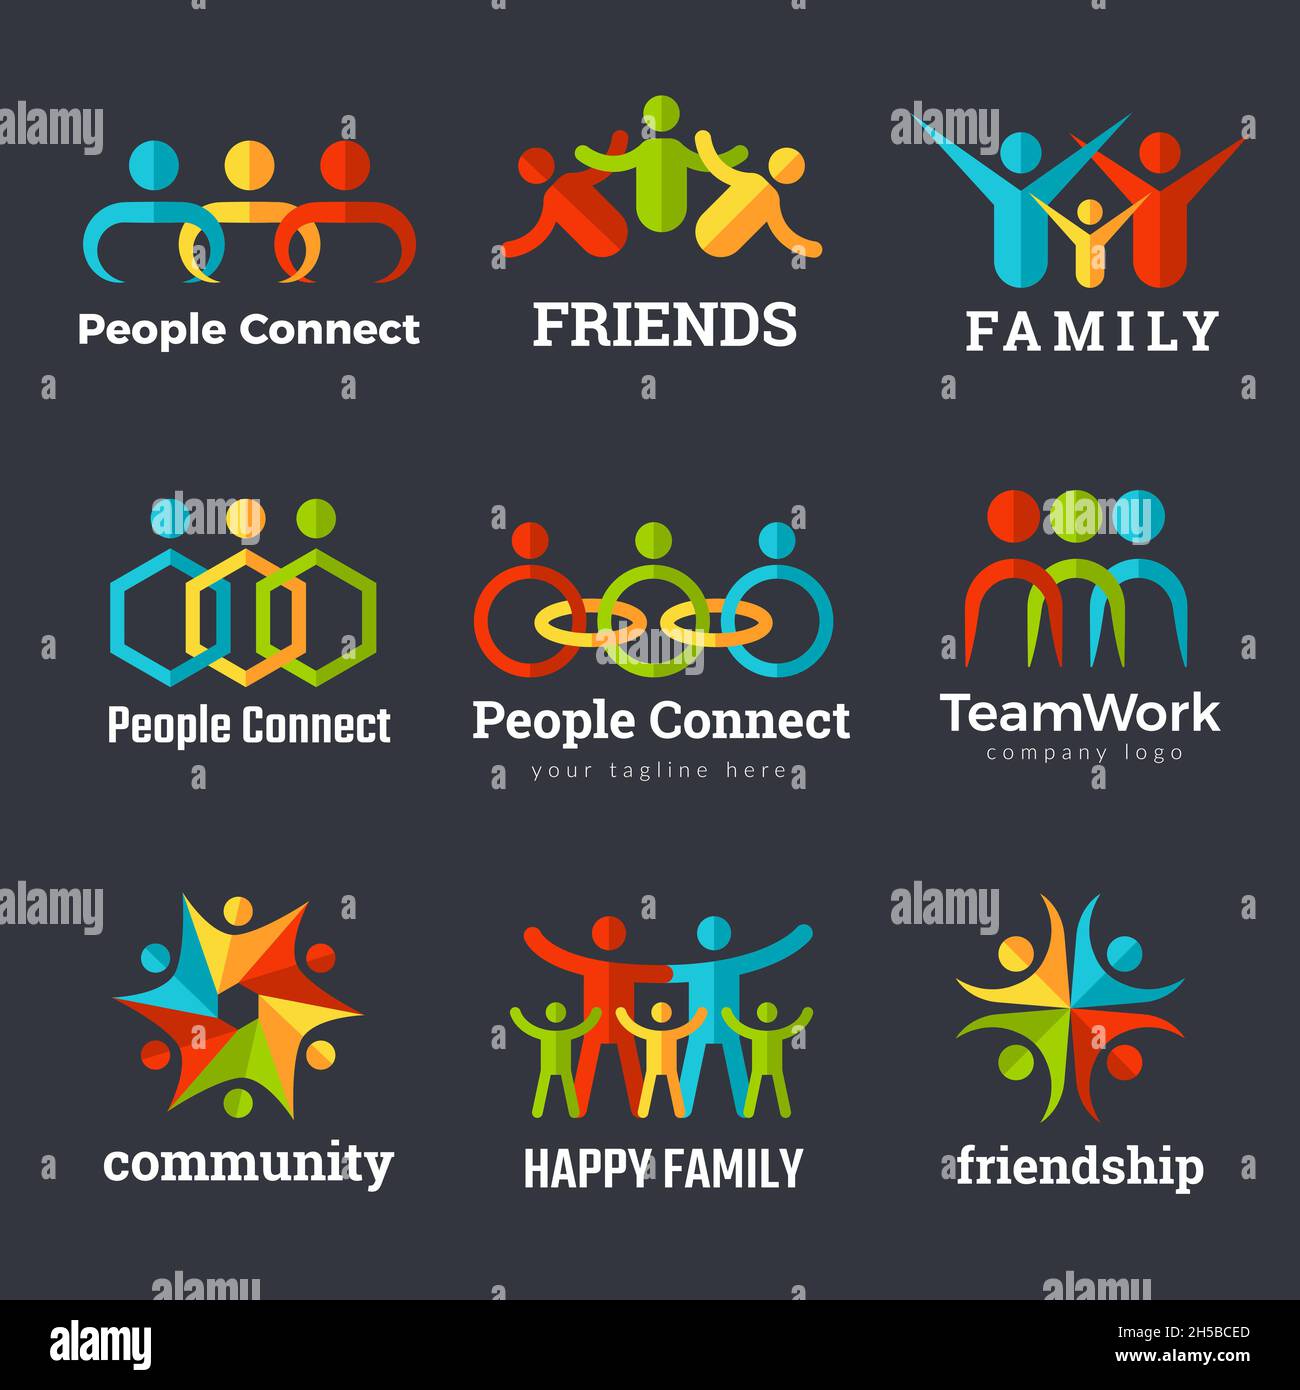 Logo de l'amitié.L'équipe de partenariat avec la communauté d'affaires travaille syndicat familial symboles vectoriels récents Illustration de Vecteur